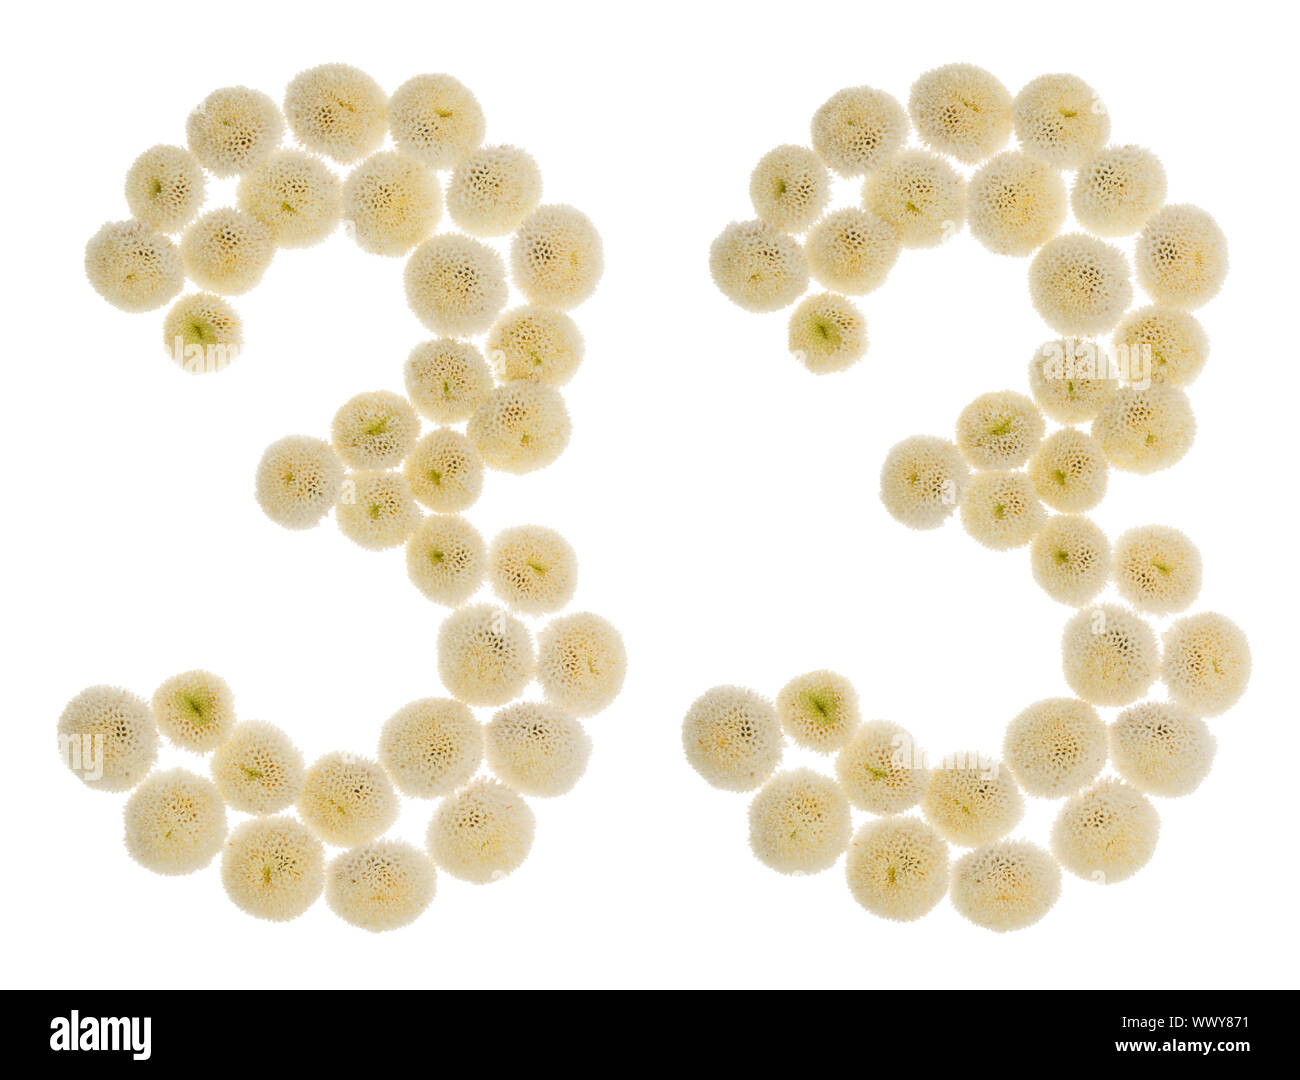 Chiffre arabe 33, trente-trois, à partir de crème fleurs de chrysanthème, isolé sur fond blanc Banque D'Images